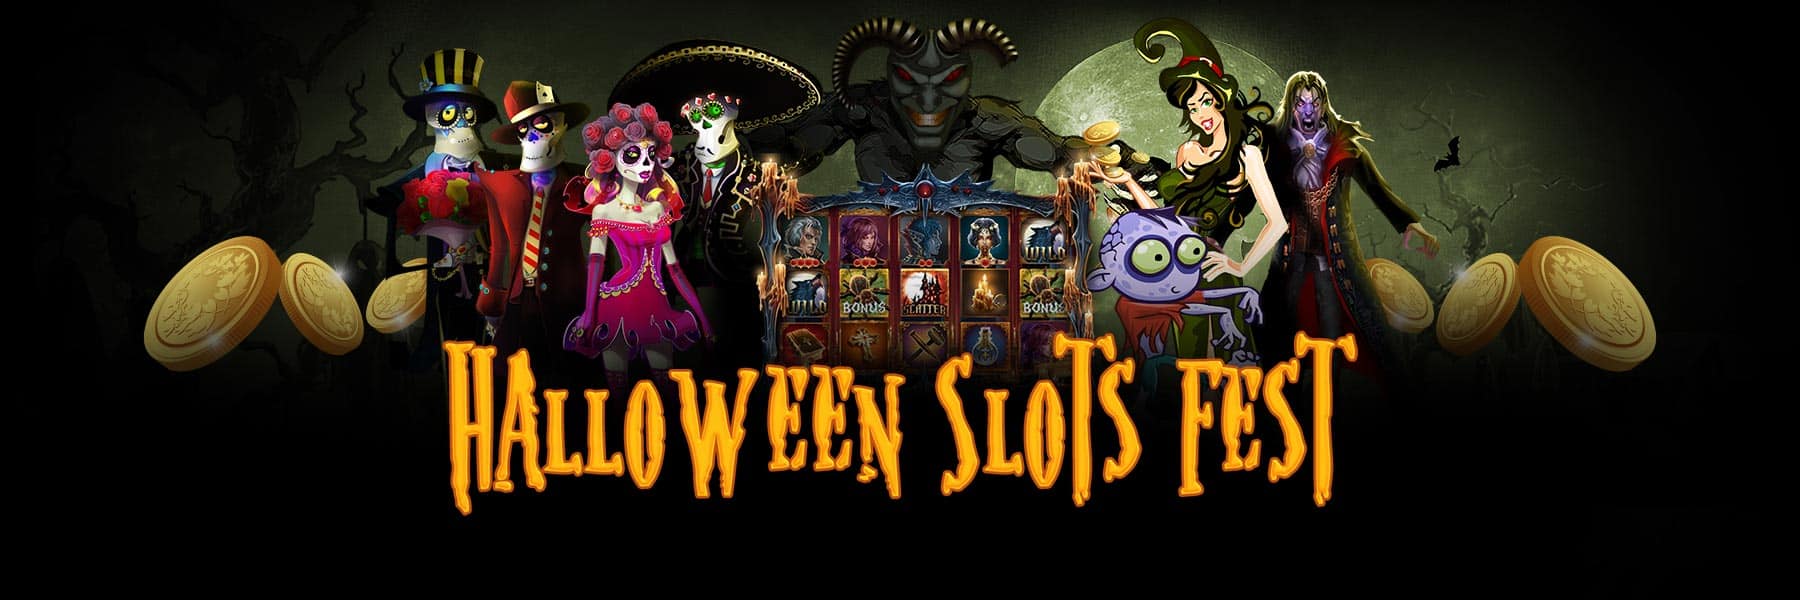 Bingo Hall - Halloween Slots Fest